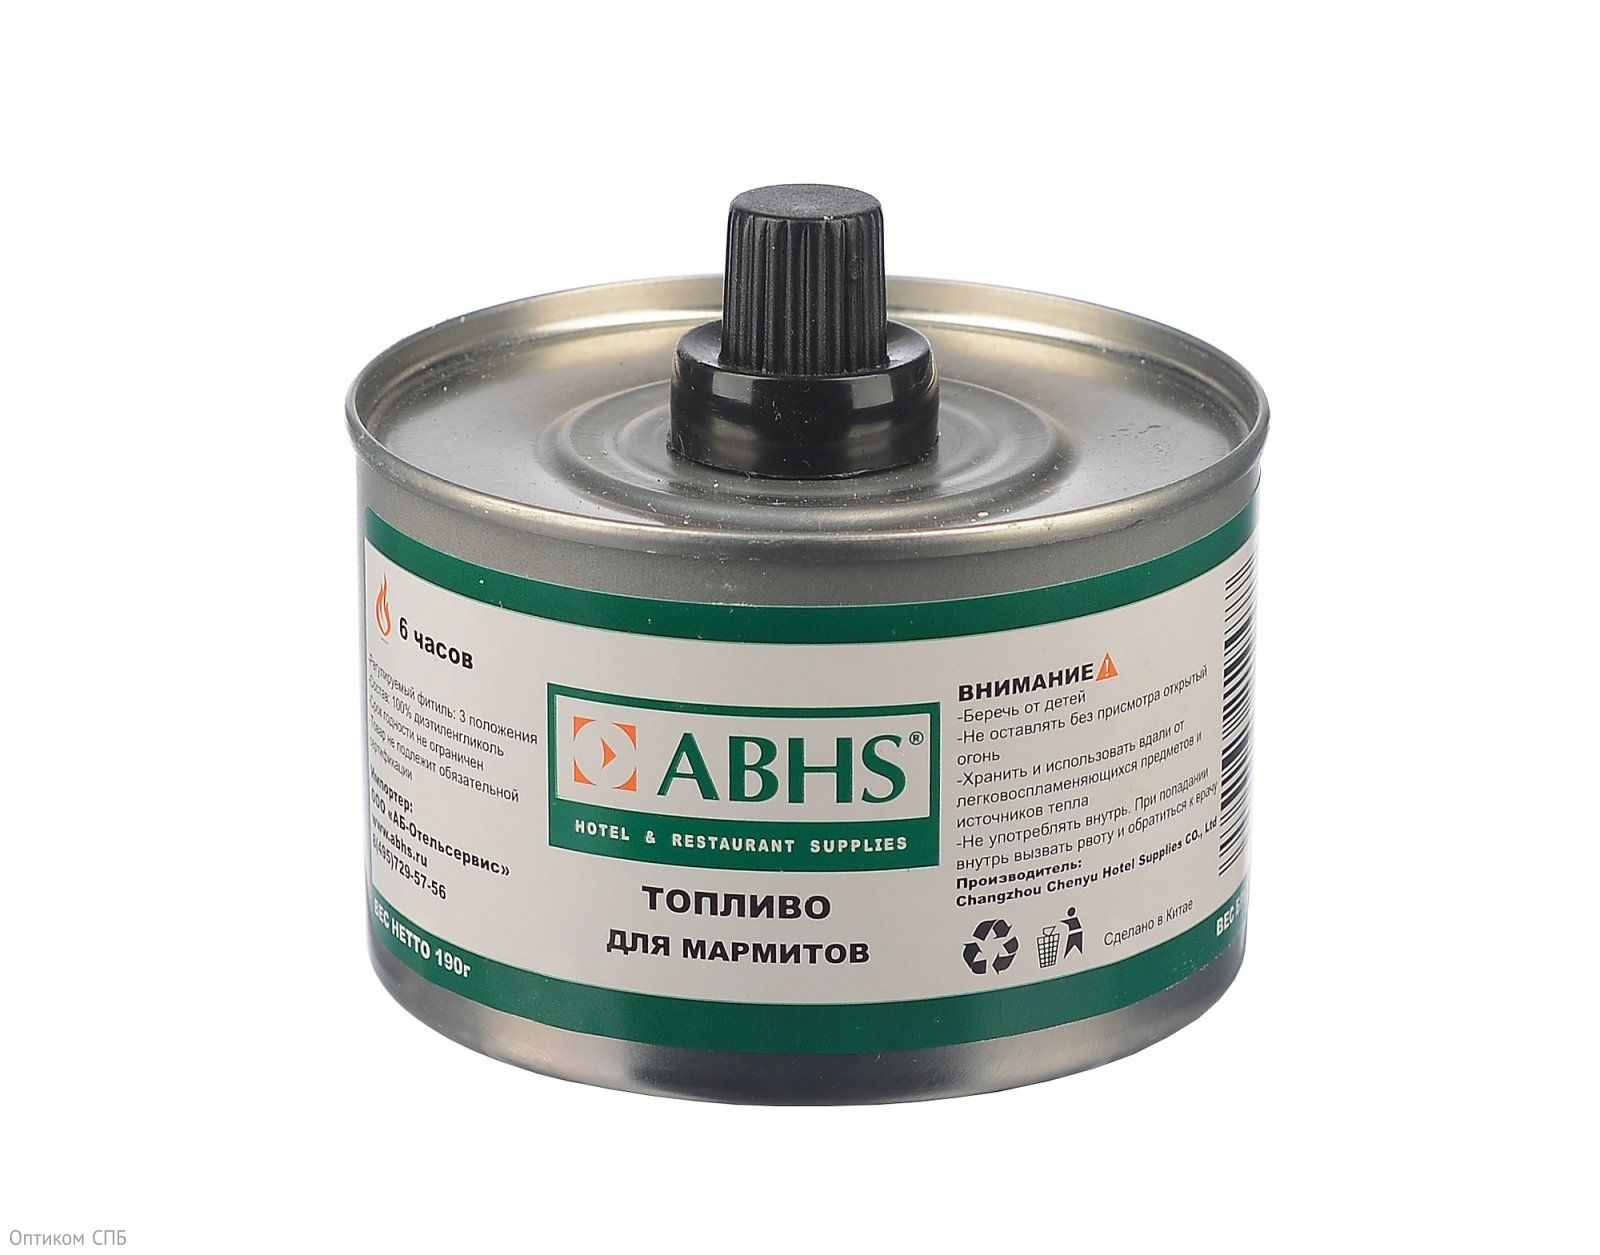 Топливо ABHS – предназначено для подогрева мармитов и приготовления фондю. Благодаря особой конструкции фитиля контролируется время горения до 6 часов. Состав: диэтиленгликоль.